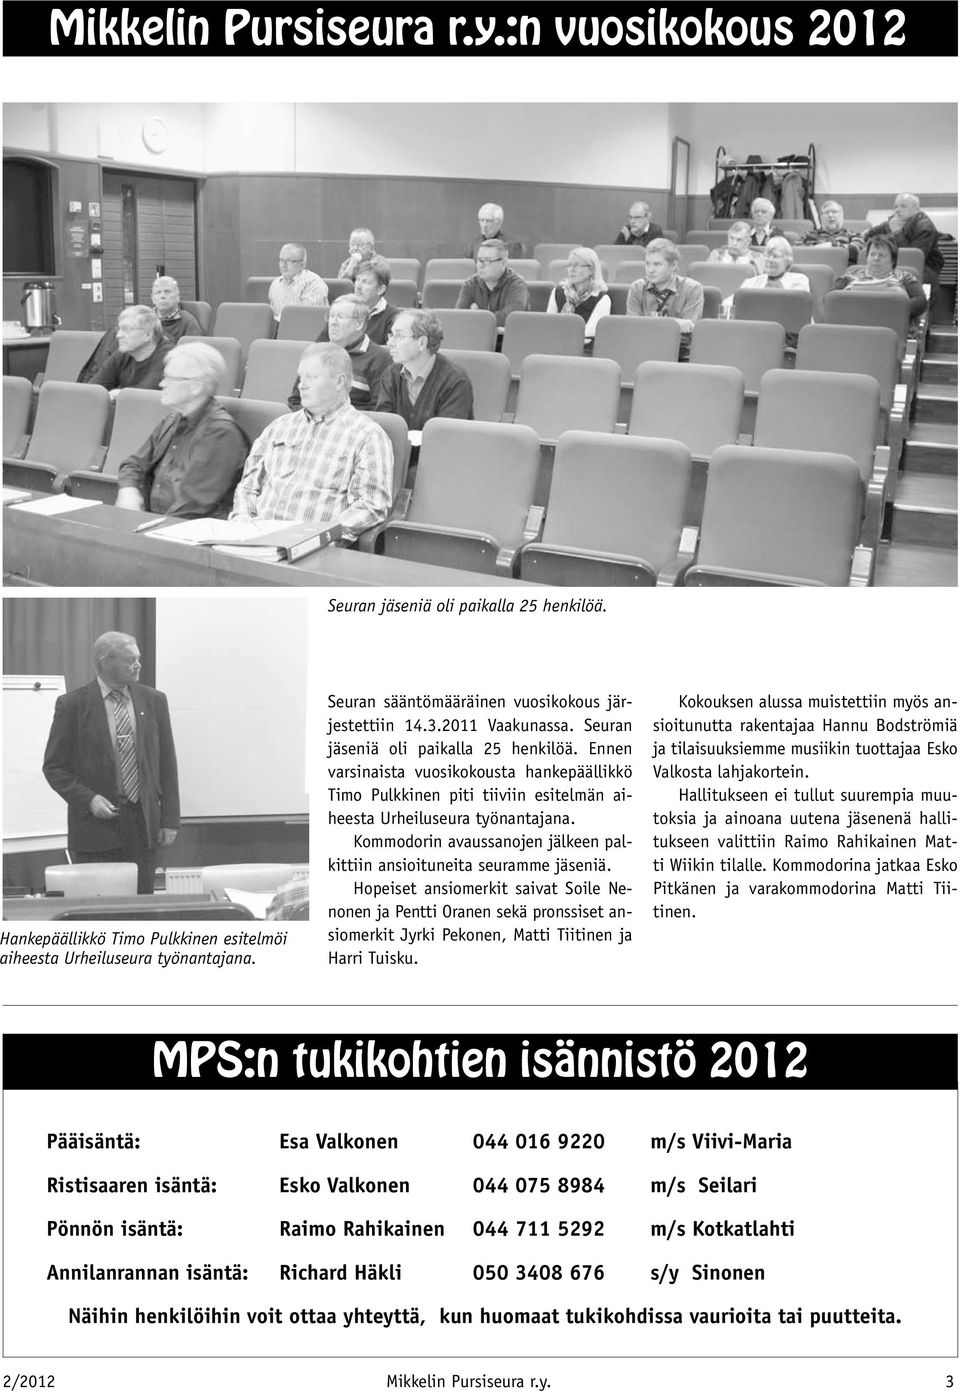 Ennen varsinaista vuosikokousta hankepäällikkö Timo Pulkkinen piti tiiviin esitelmän aiheesta Urheiluseura työnantajana. Kommodorin avaussanojen jälkeen palkittiin ansioituneita seuramme jäseniä.